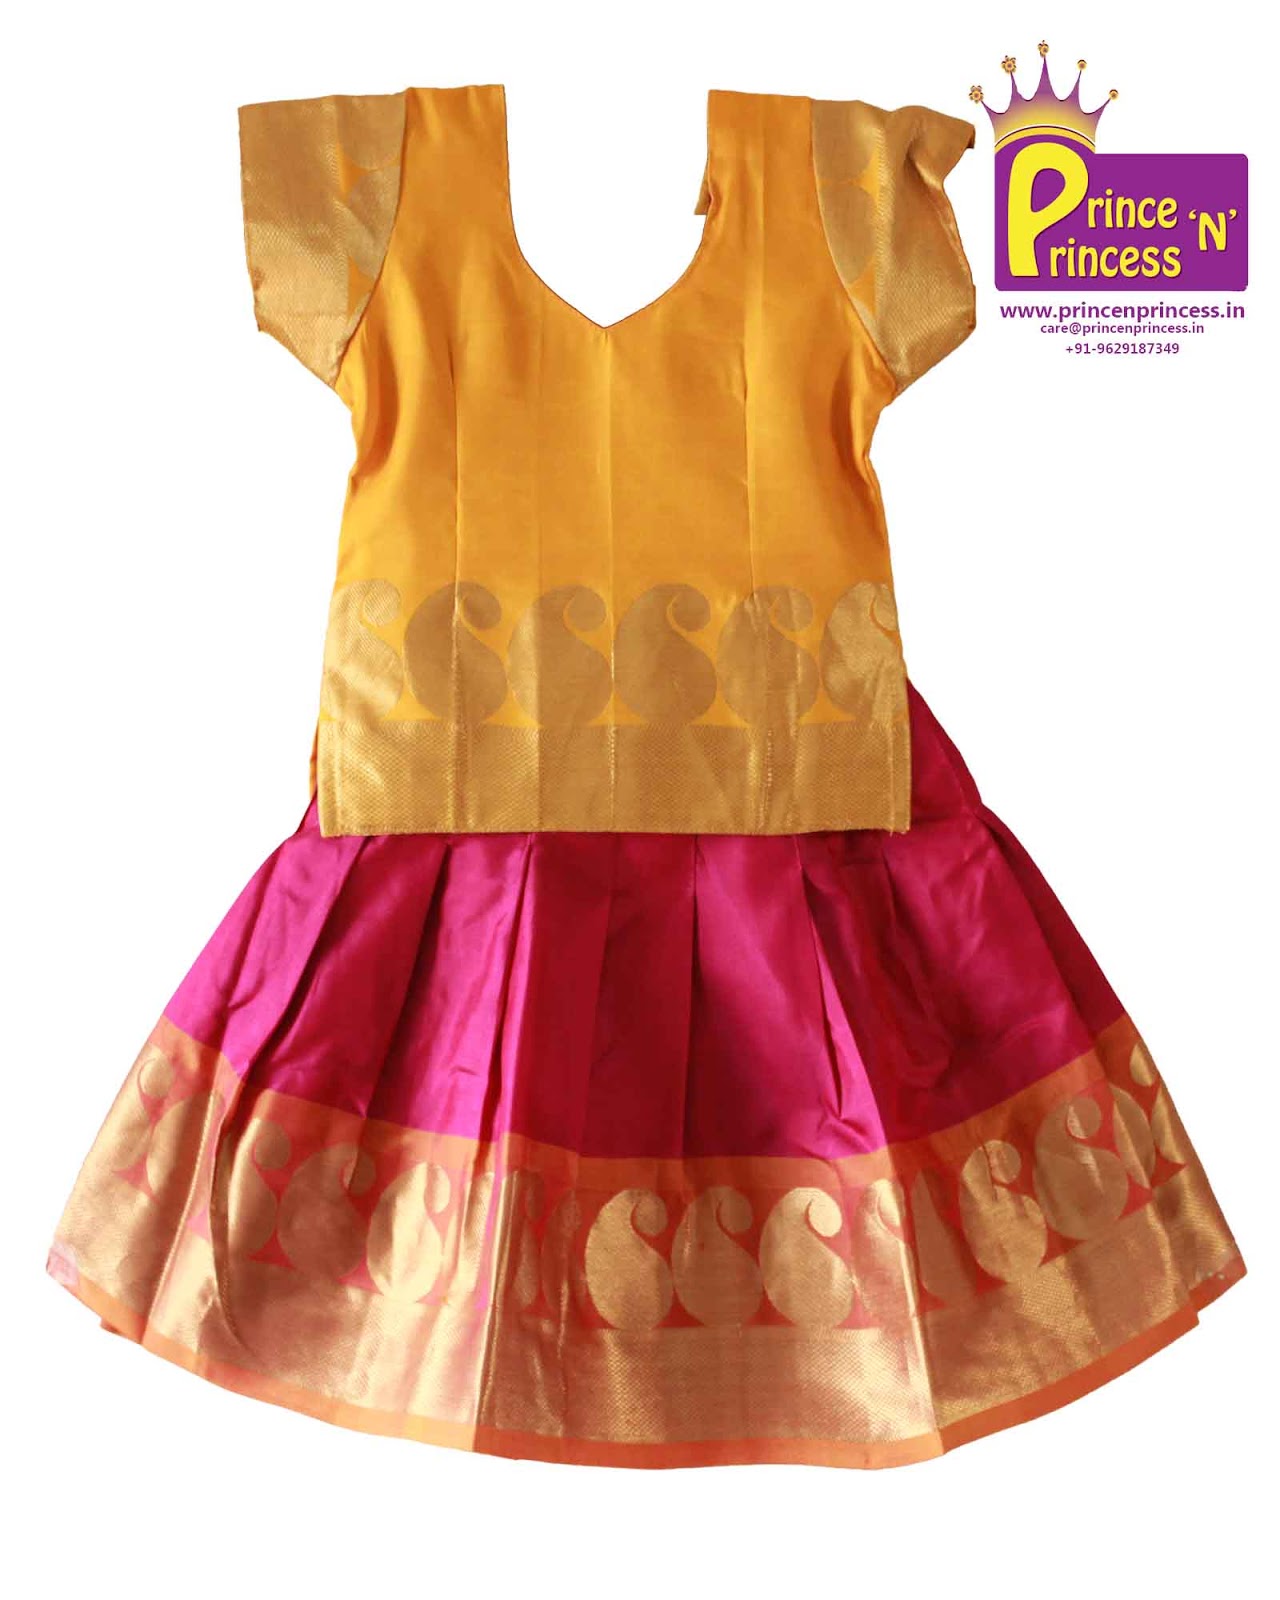 Prince N Princess: Kancheepuram Silk Pavadai langa for 6 months Baby